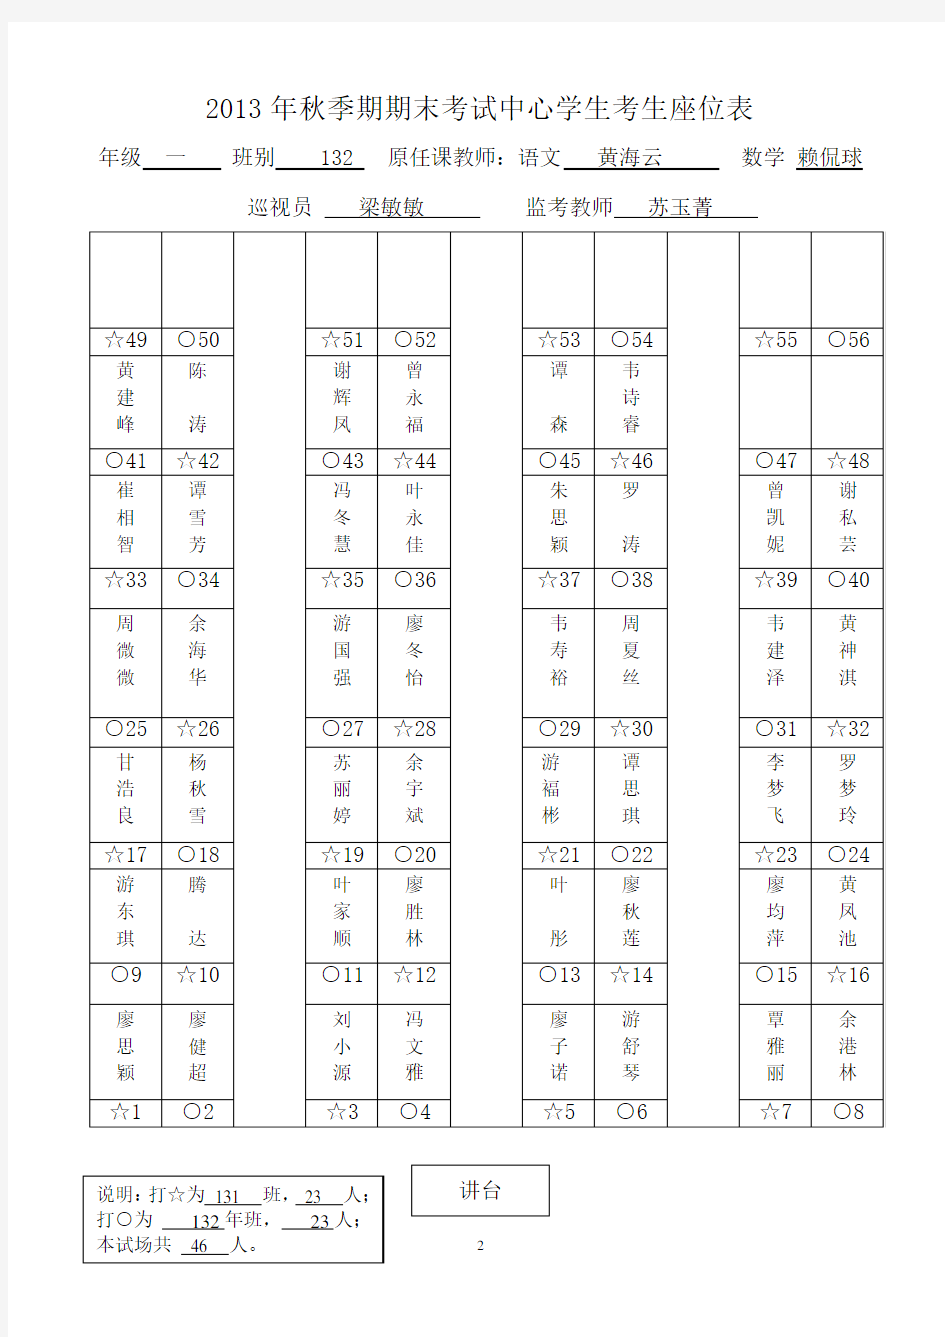 木梓镇中心学校2013年秋季期期末考试考生座位表